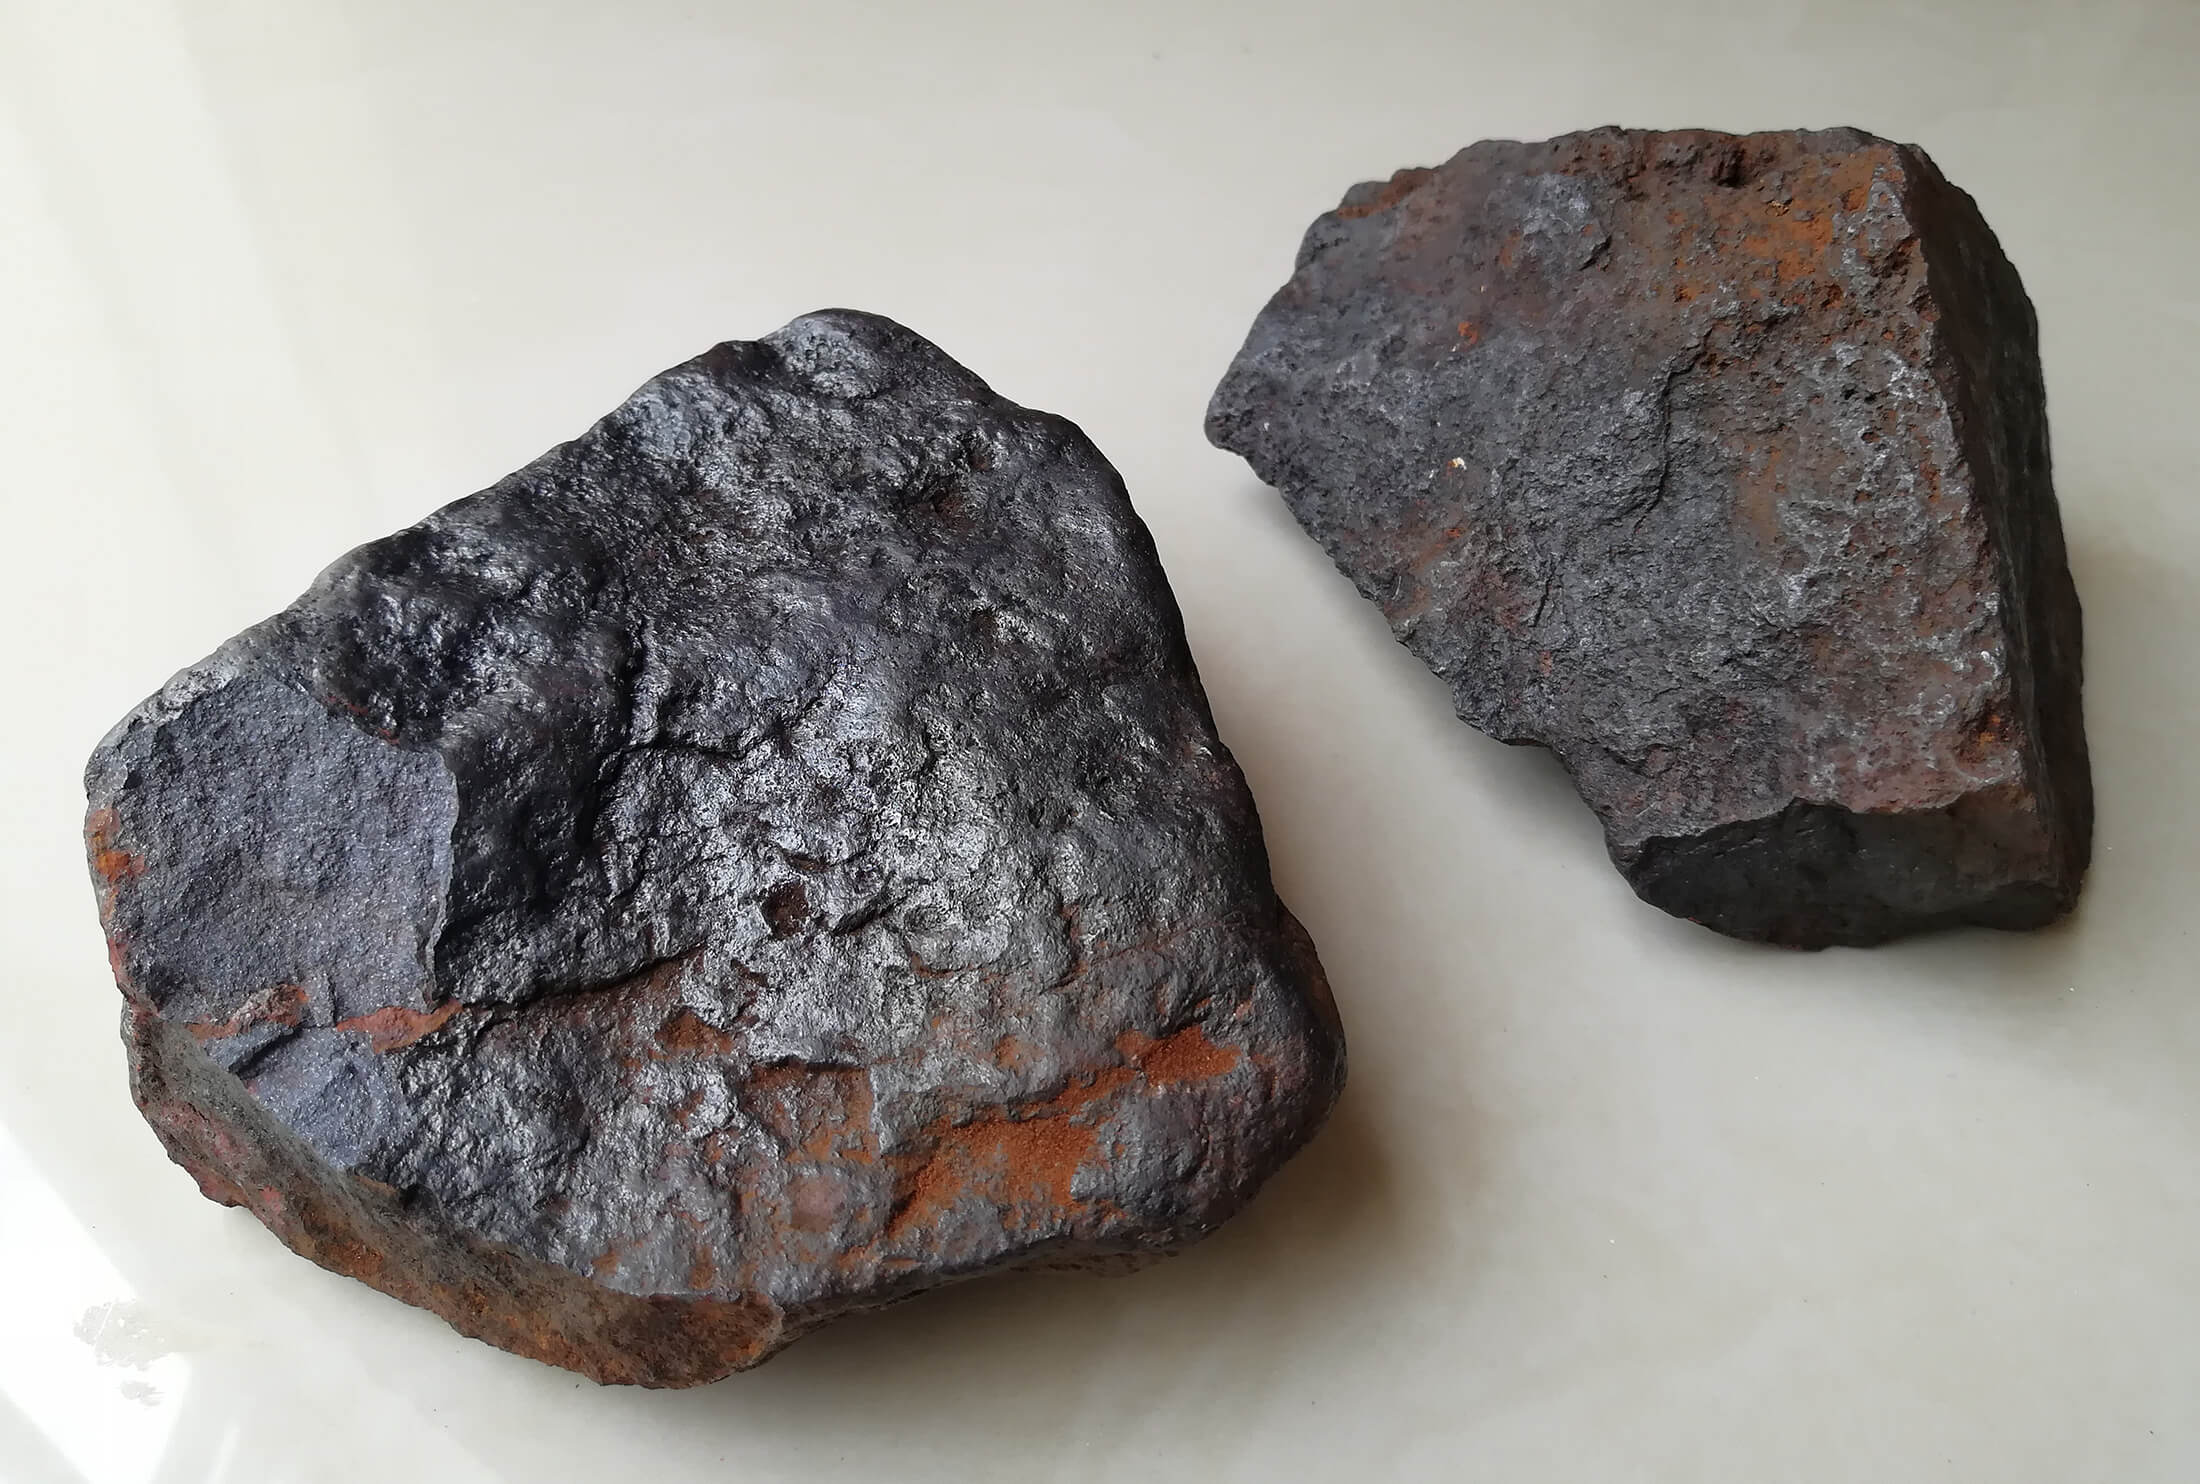 رشد قیمت سنگ آهن ضررهای ناشی از تنش تجاری استرالیا و چین را جبران می کند